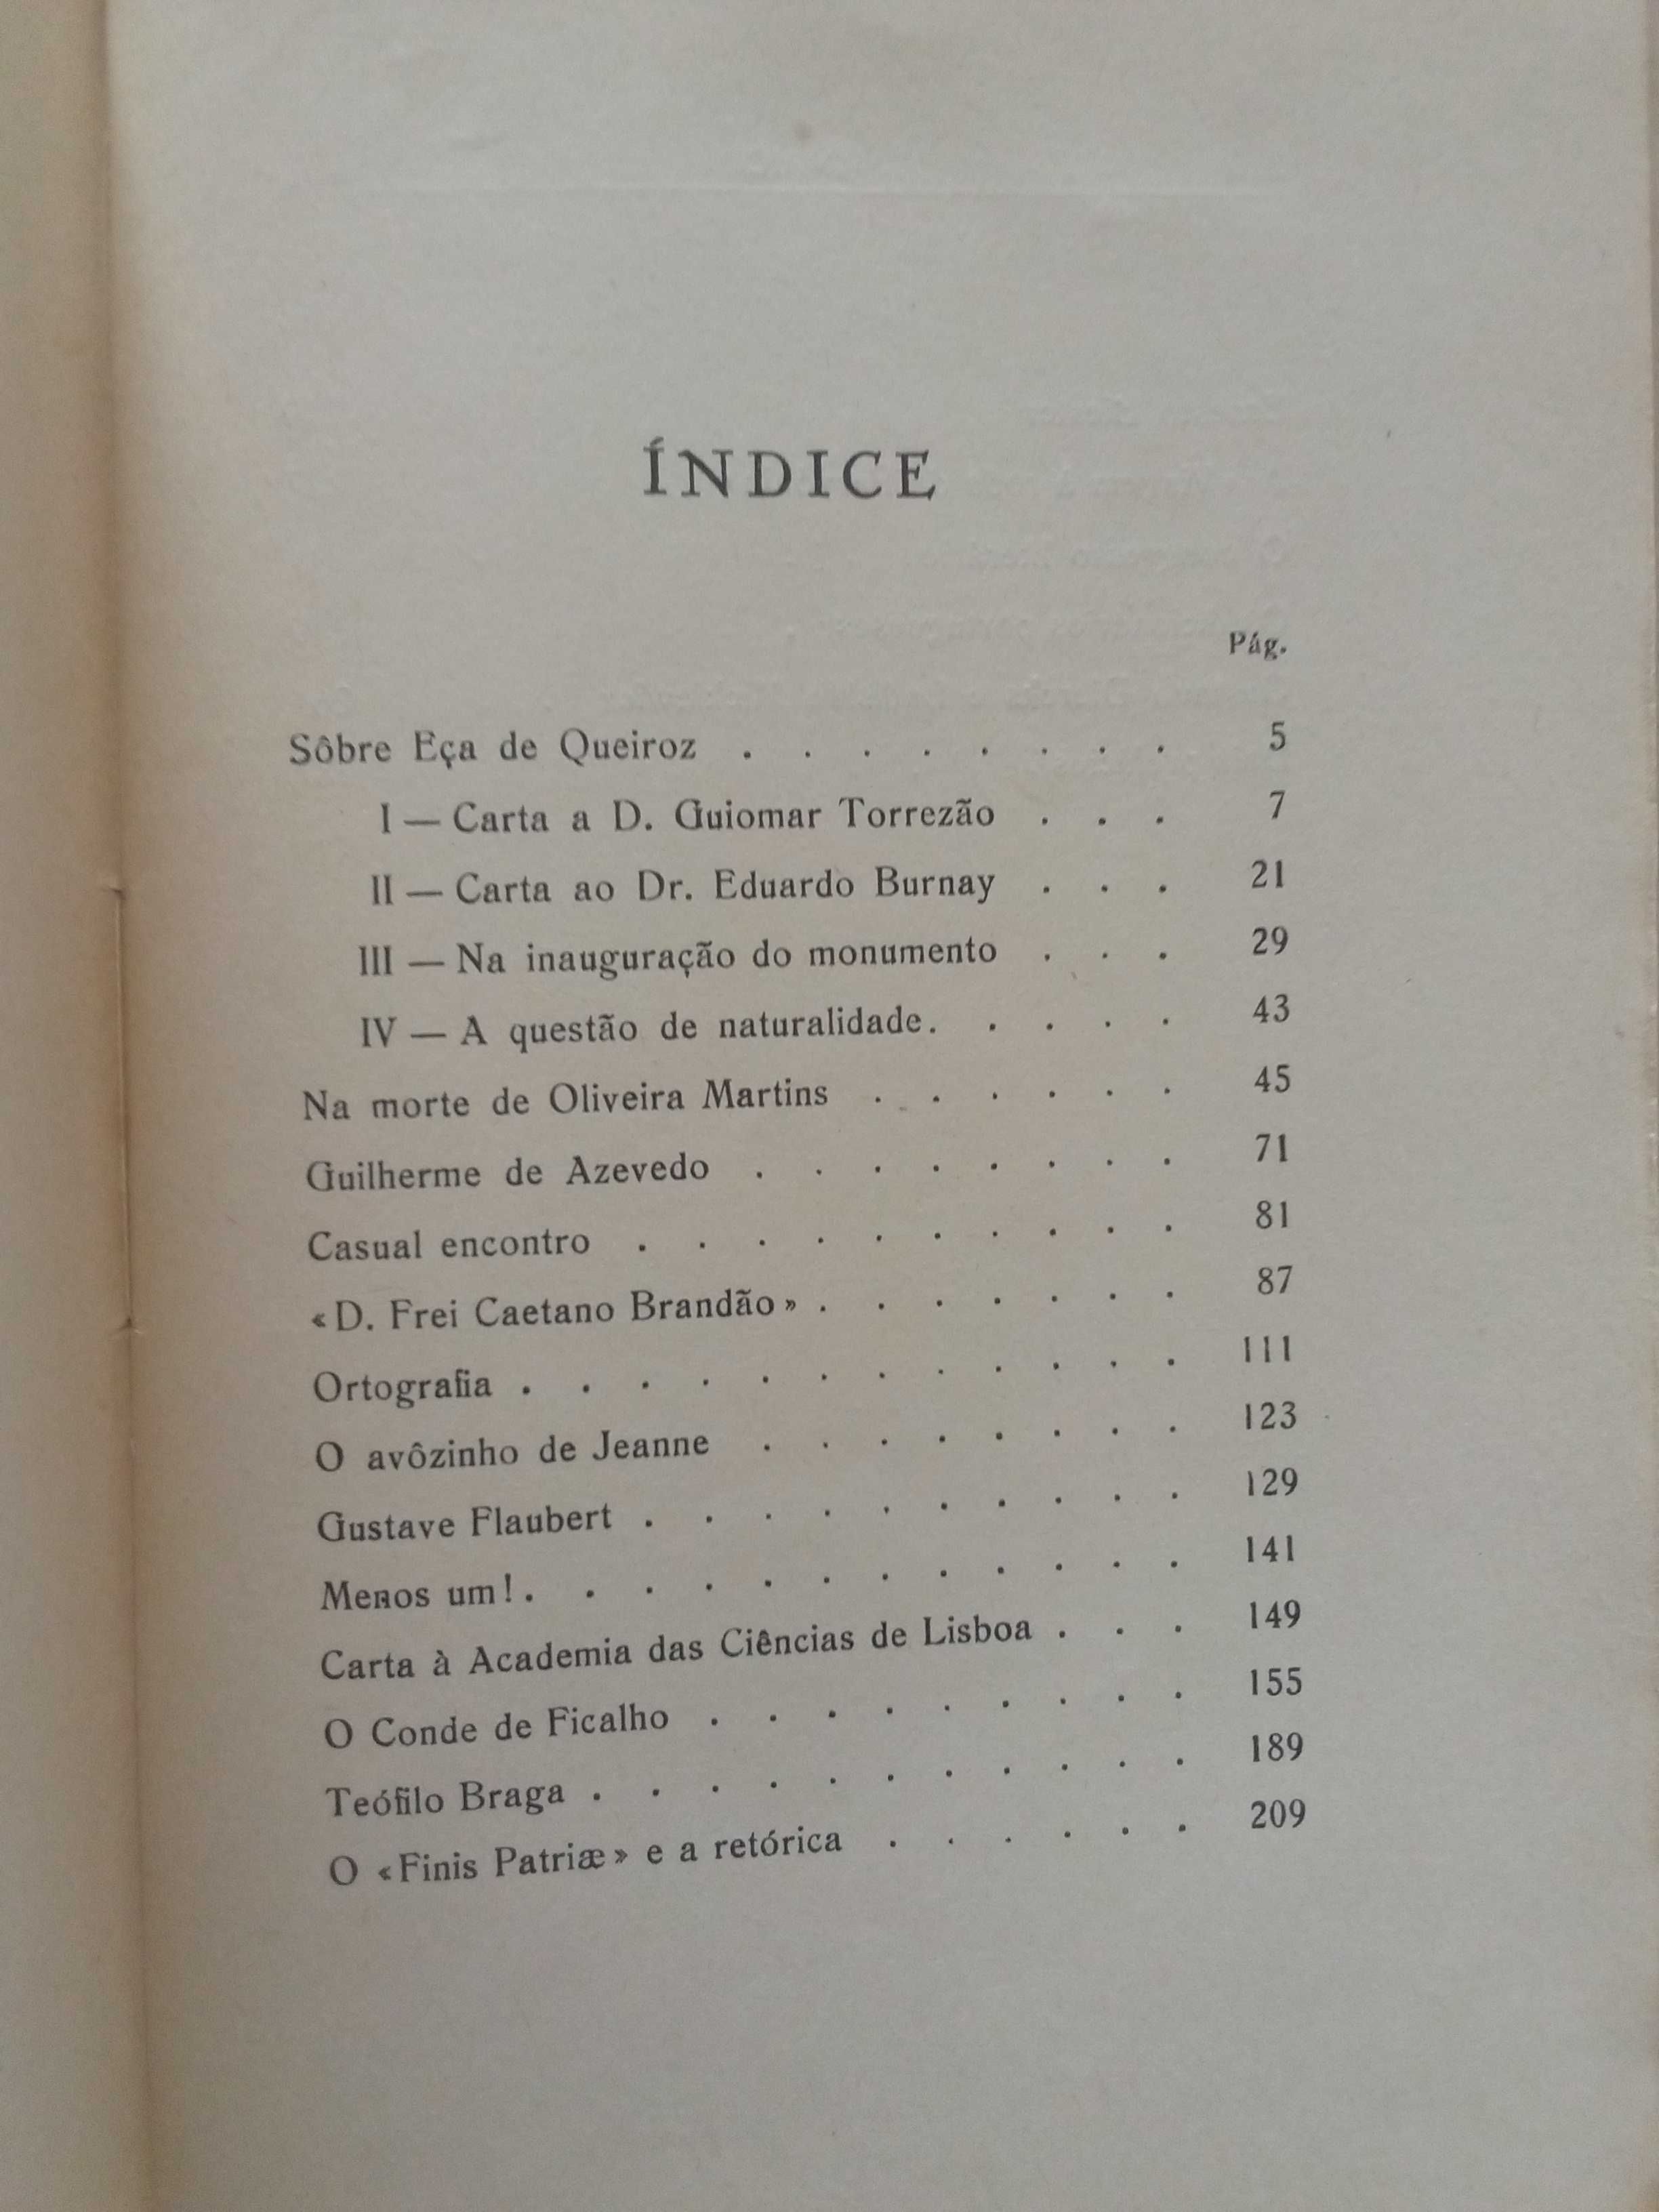 Ramalho Ortigão - Figuras e questões literárias (2 vols.)